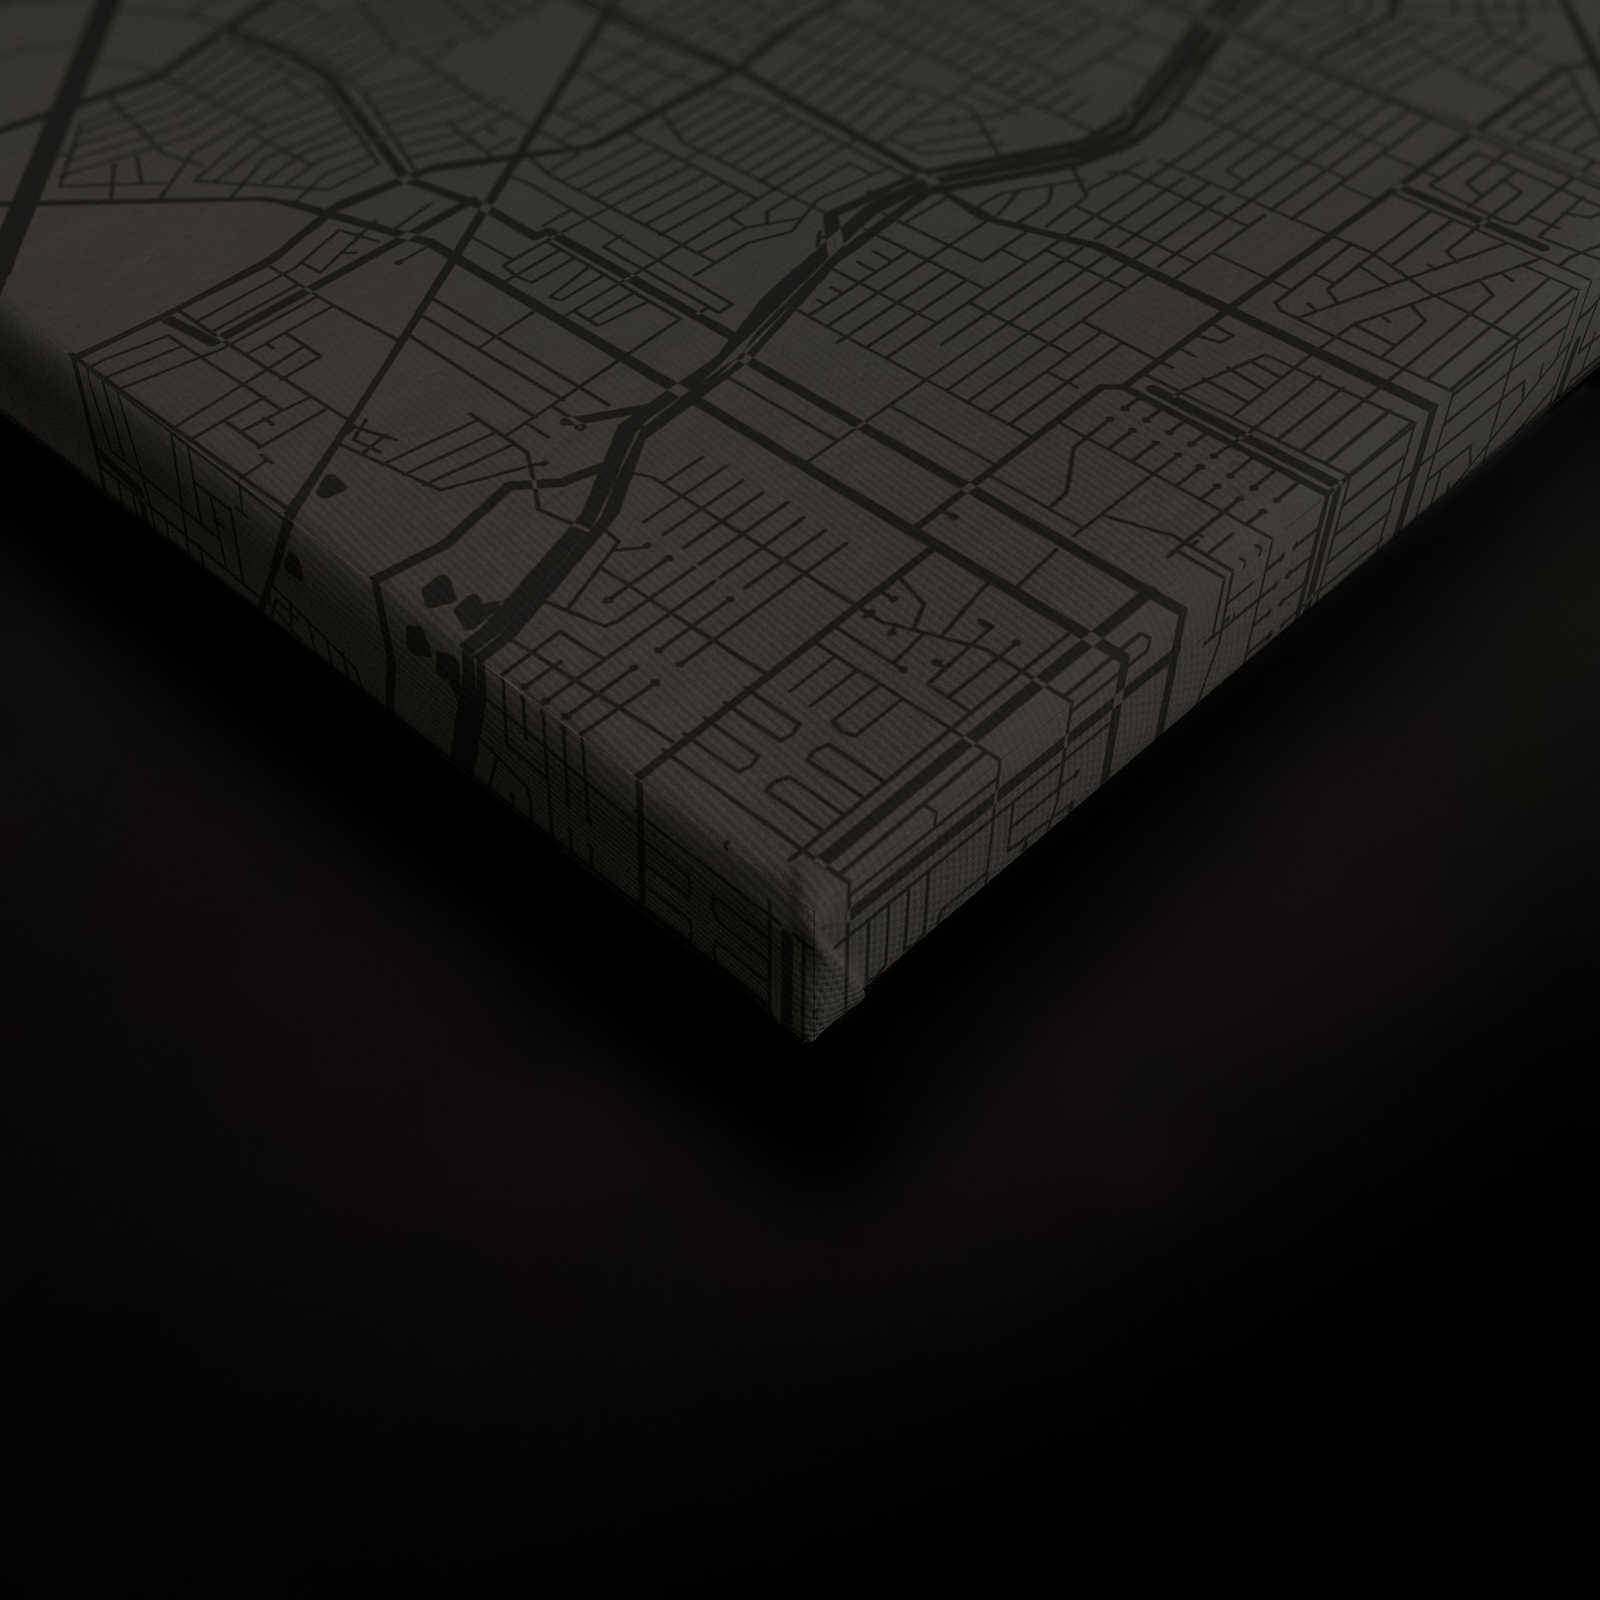             Leinwandbild Stadtkarte mit Straßenverlauf | schwarz – 0,90 m x 0,60 m
        